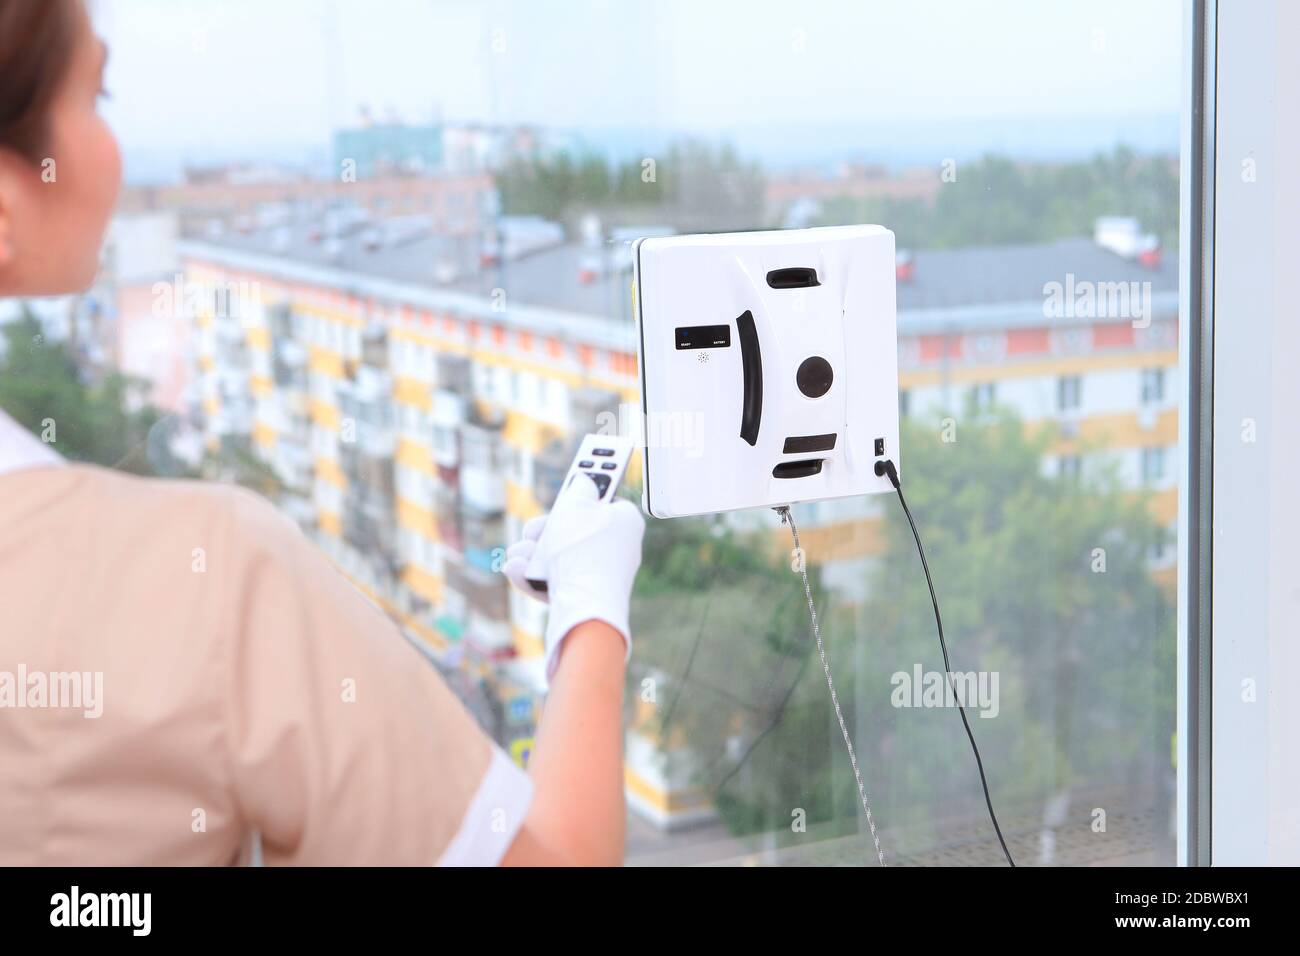 Ein Mädchen in Uniform steuert ferngesteuert einen Roboter, der Windows reinigt. Blick aus dem Fenster. Konzept der Reinigung in einem Hotel oder zu Hause. Reinigung des Hotels Ro Stockfoto